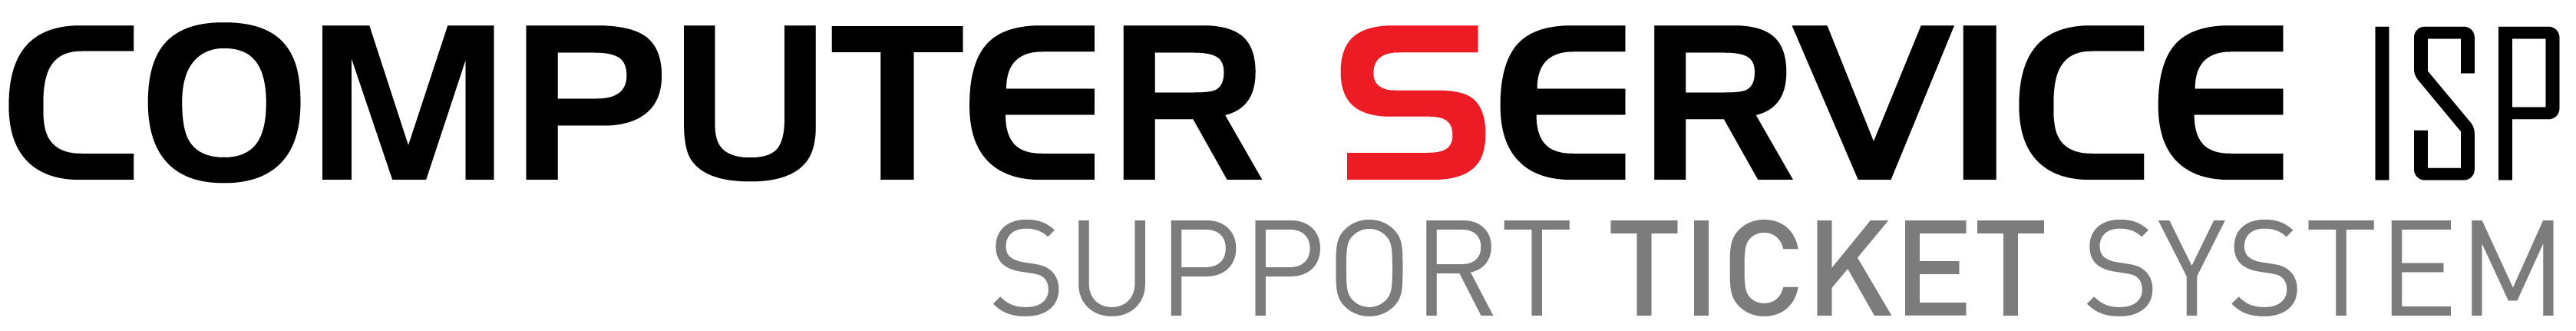 CSISP - Support